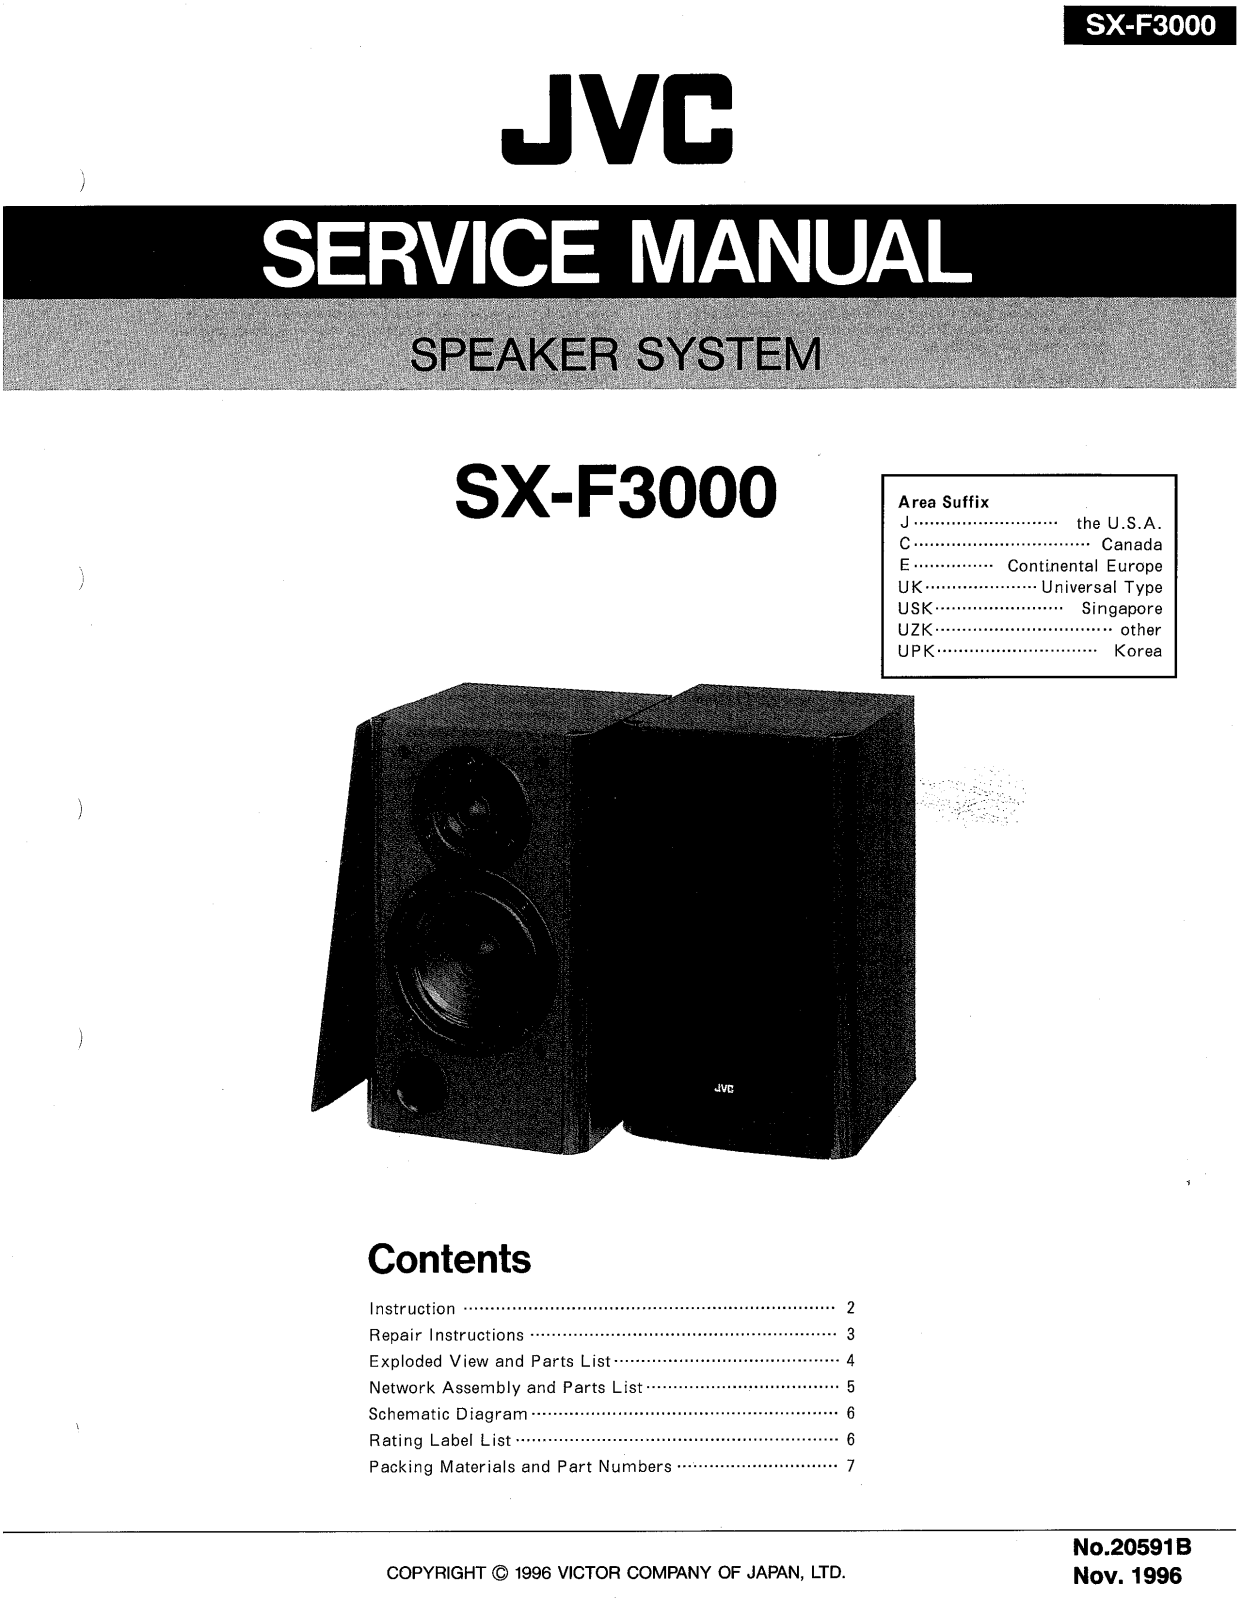 JVC SX-F3000 Service Manual